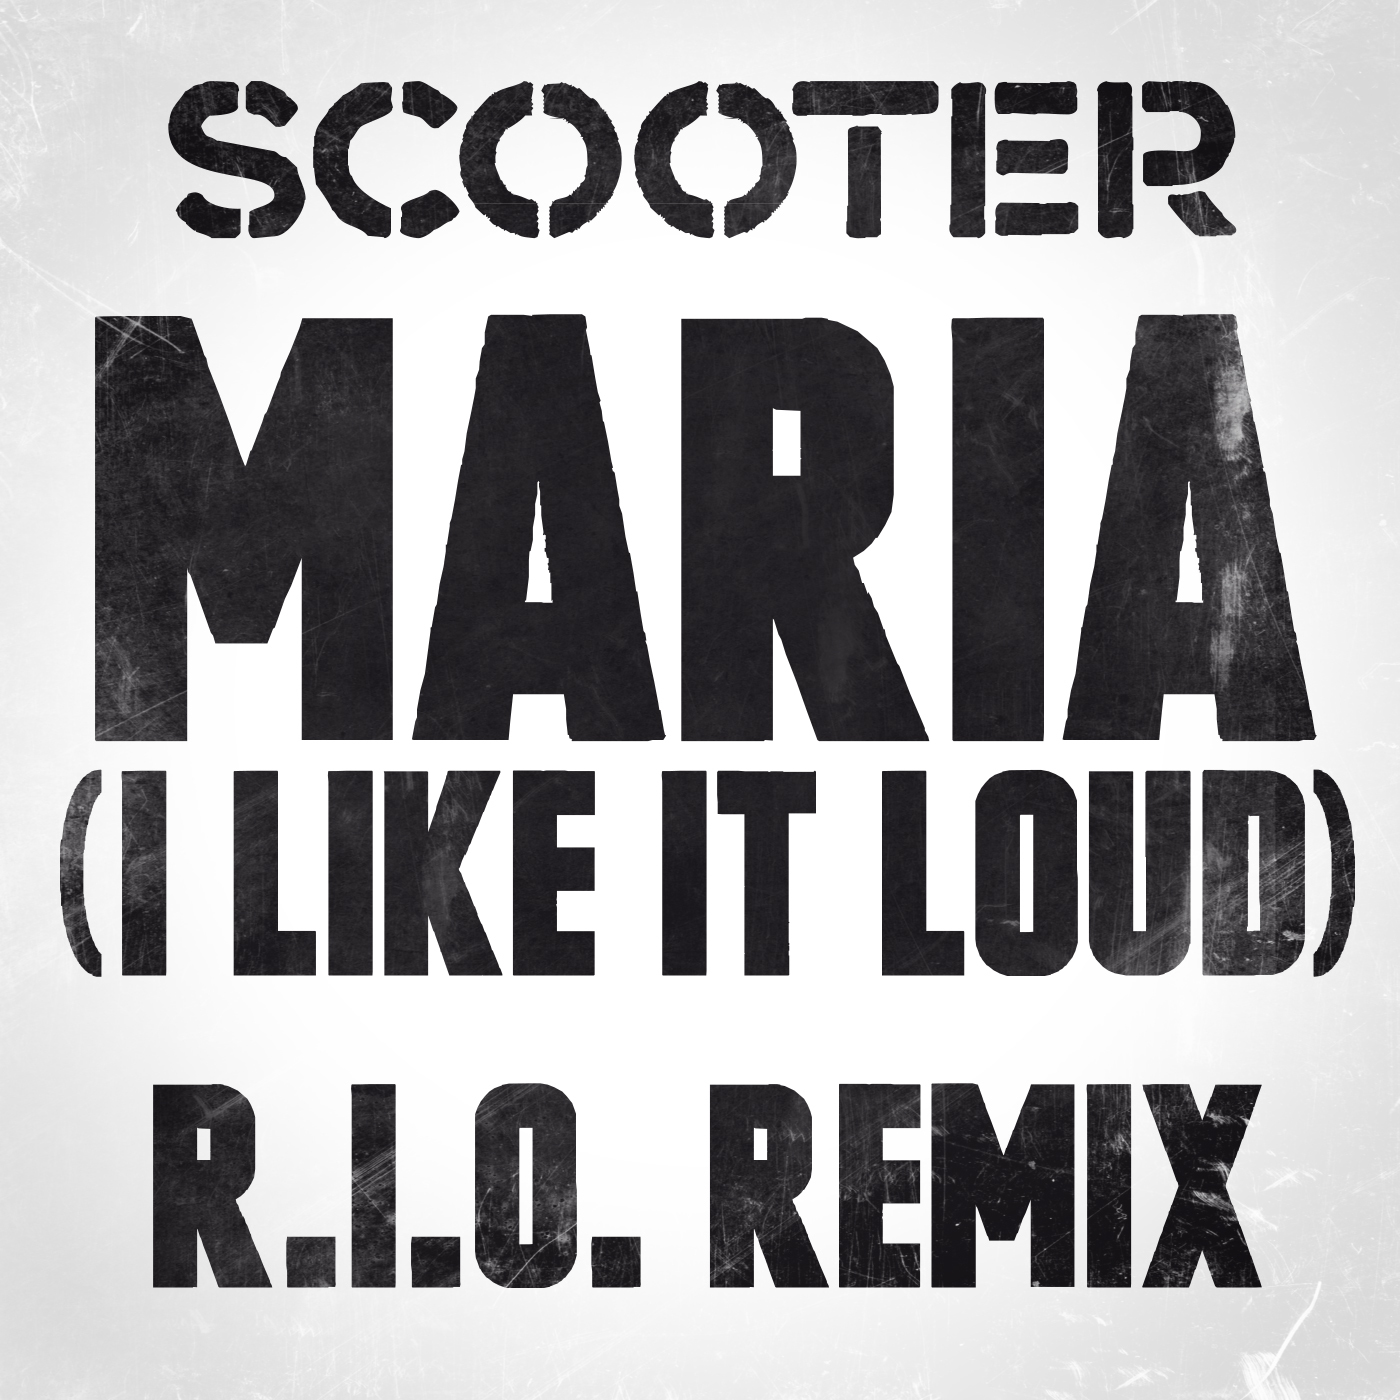 Maria (I Like It Loud) (R.I.O. Remix)